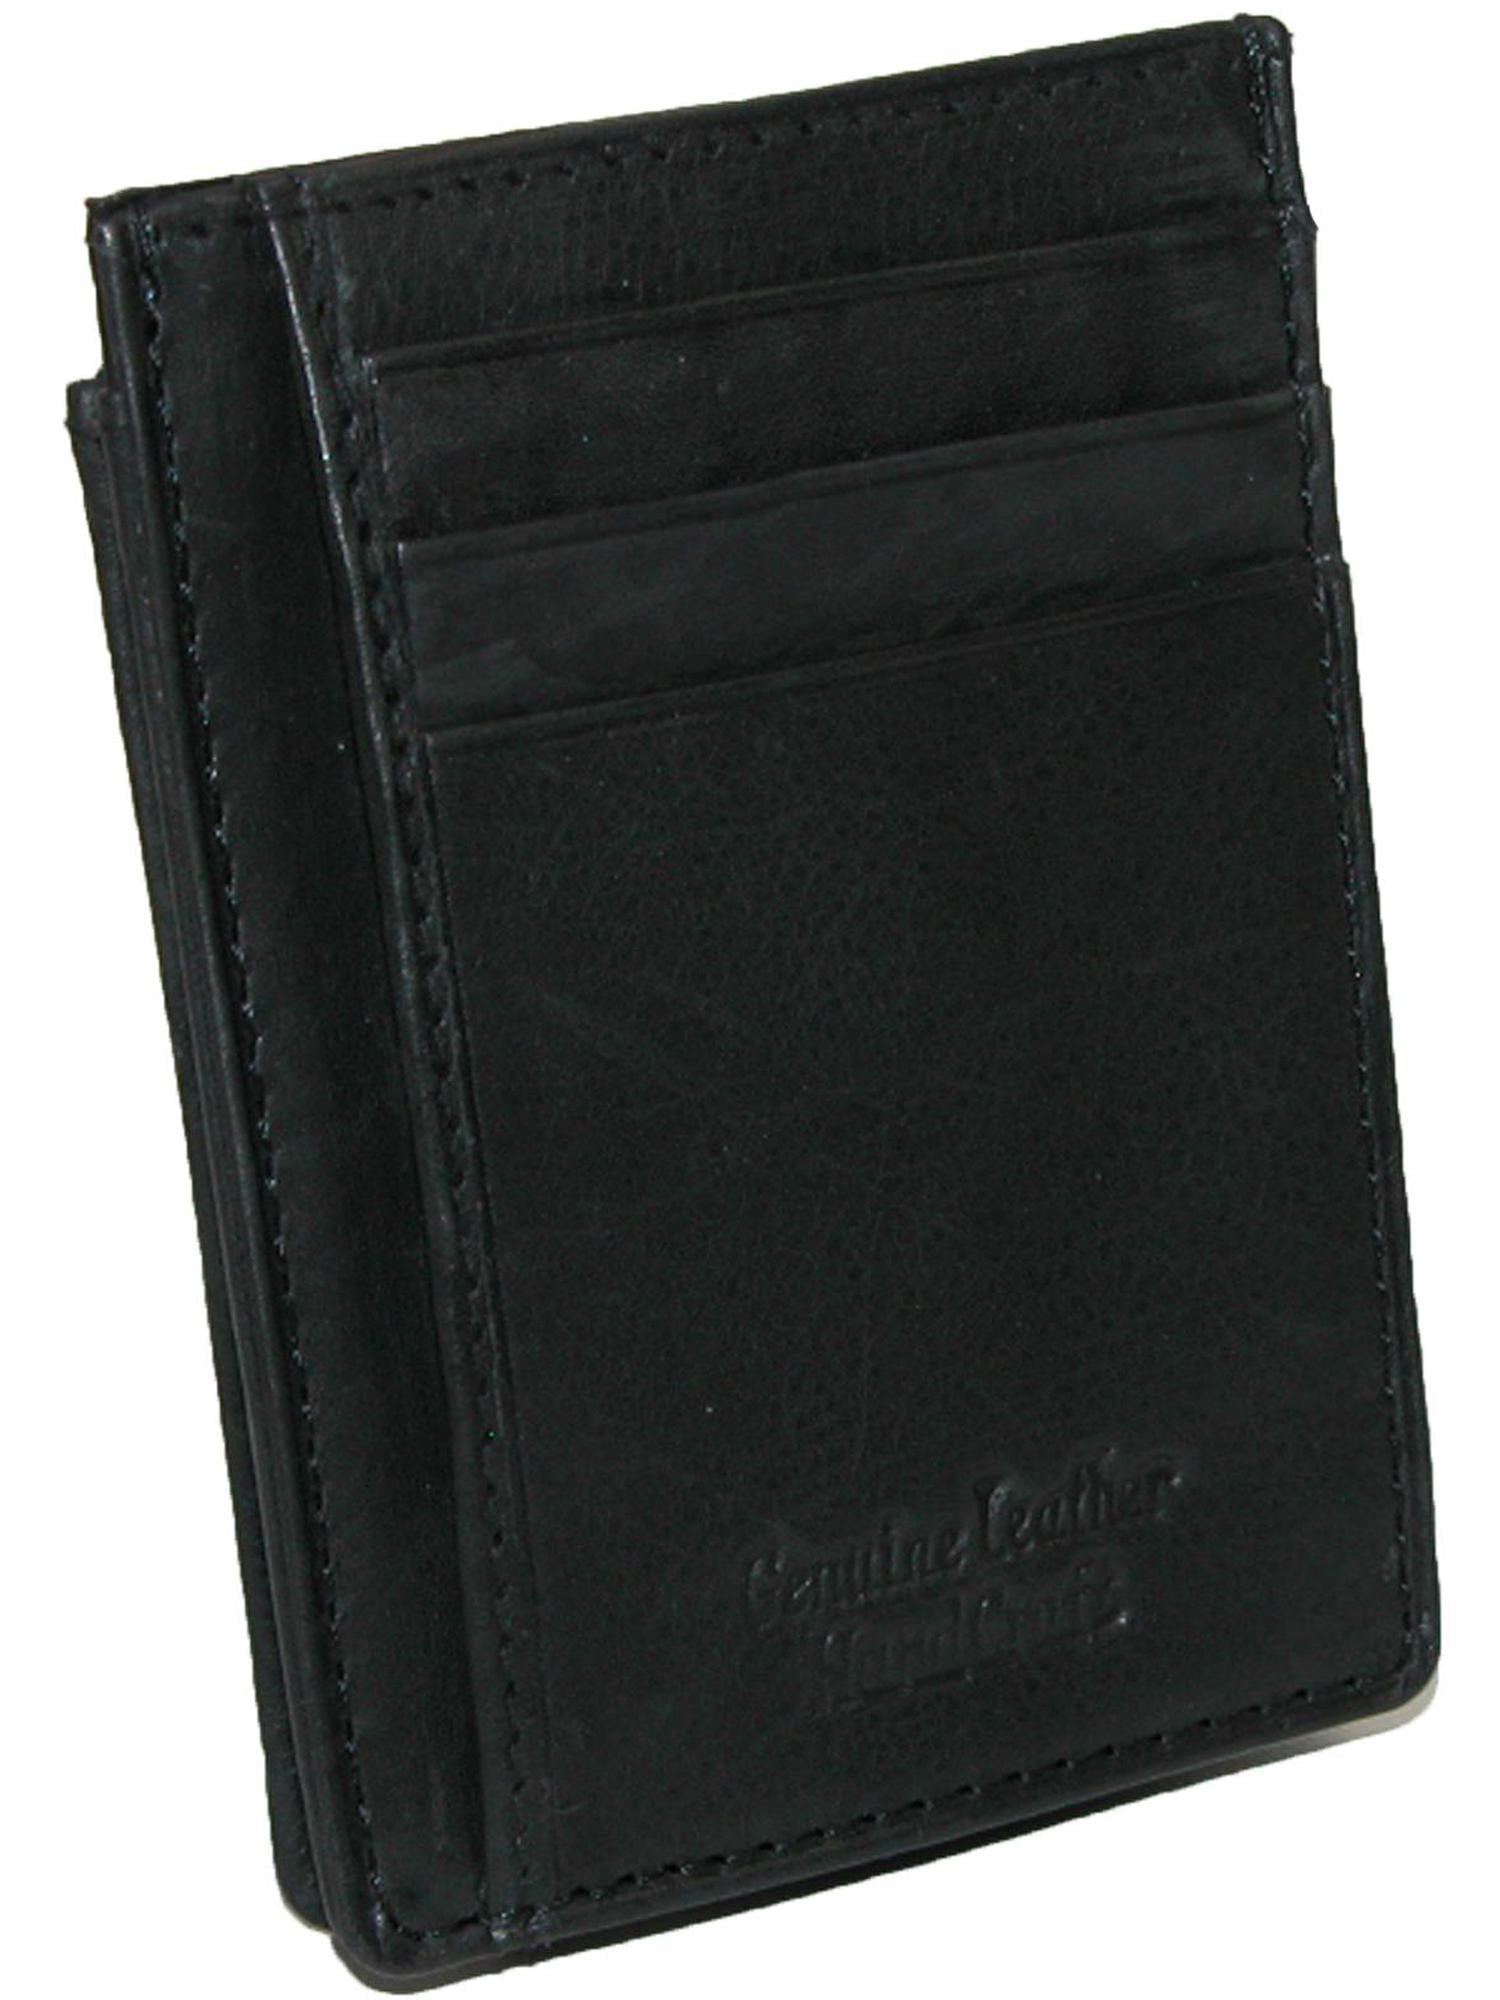 Black AfterGen Unisex Adult Rockefeller Card holder Wallet Saffiano Leather Slim Thin Minimalist